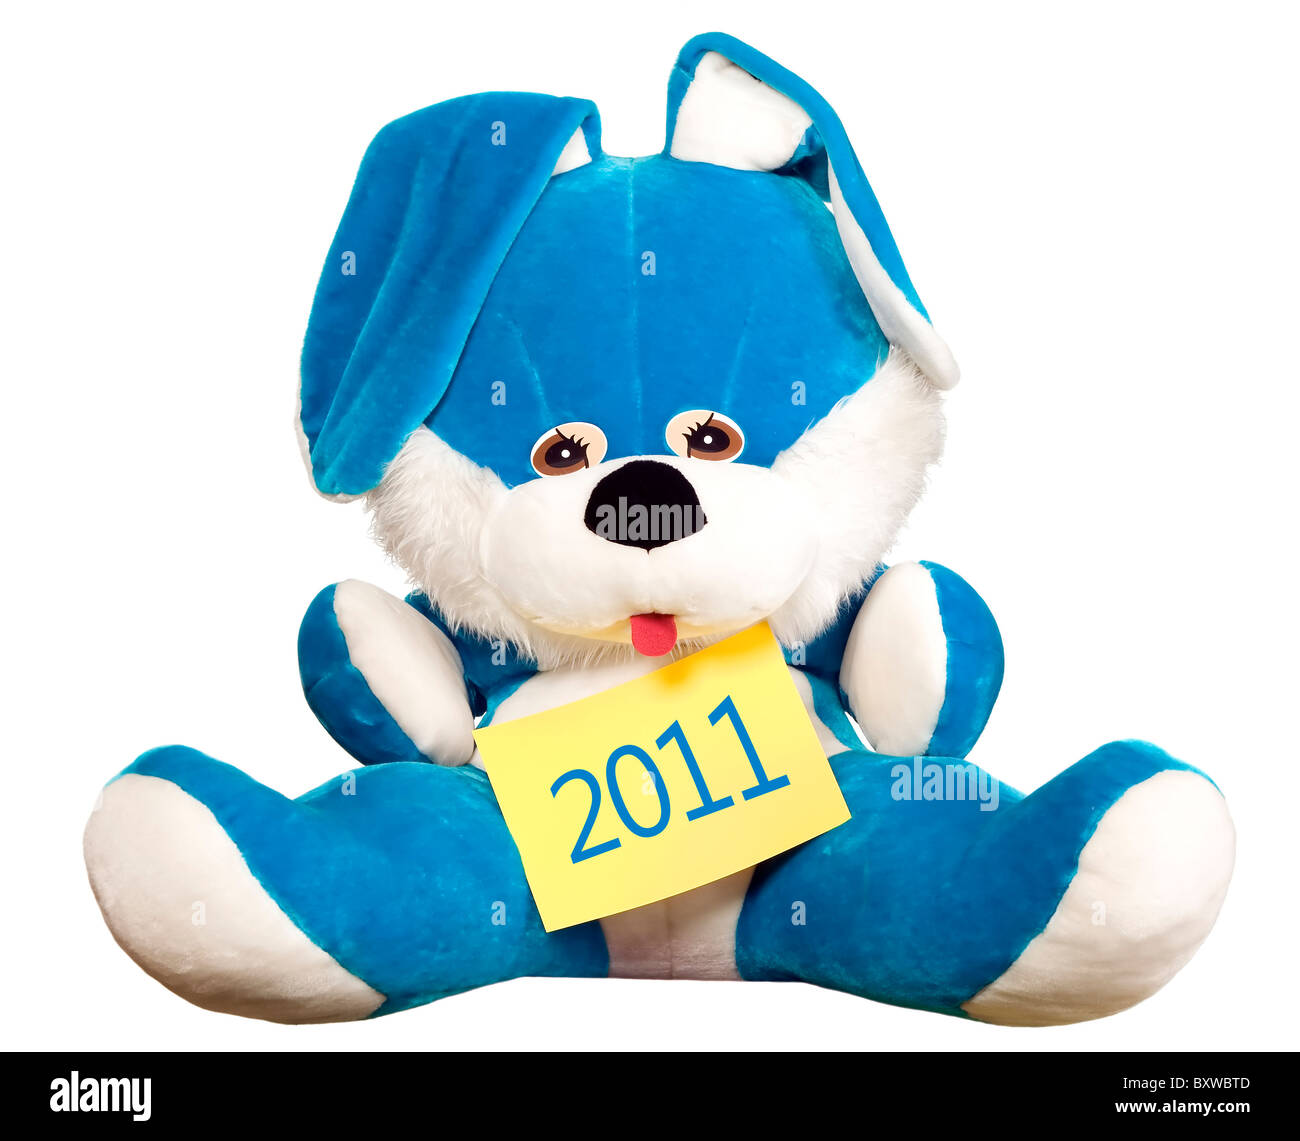 Lapin Bleu symbole de l'année 2011 est assis Banque D'Images